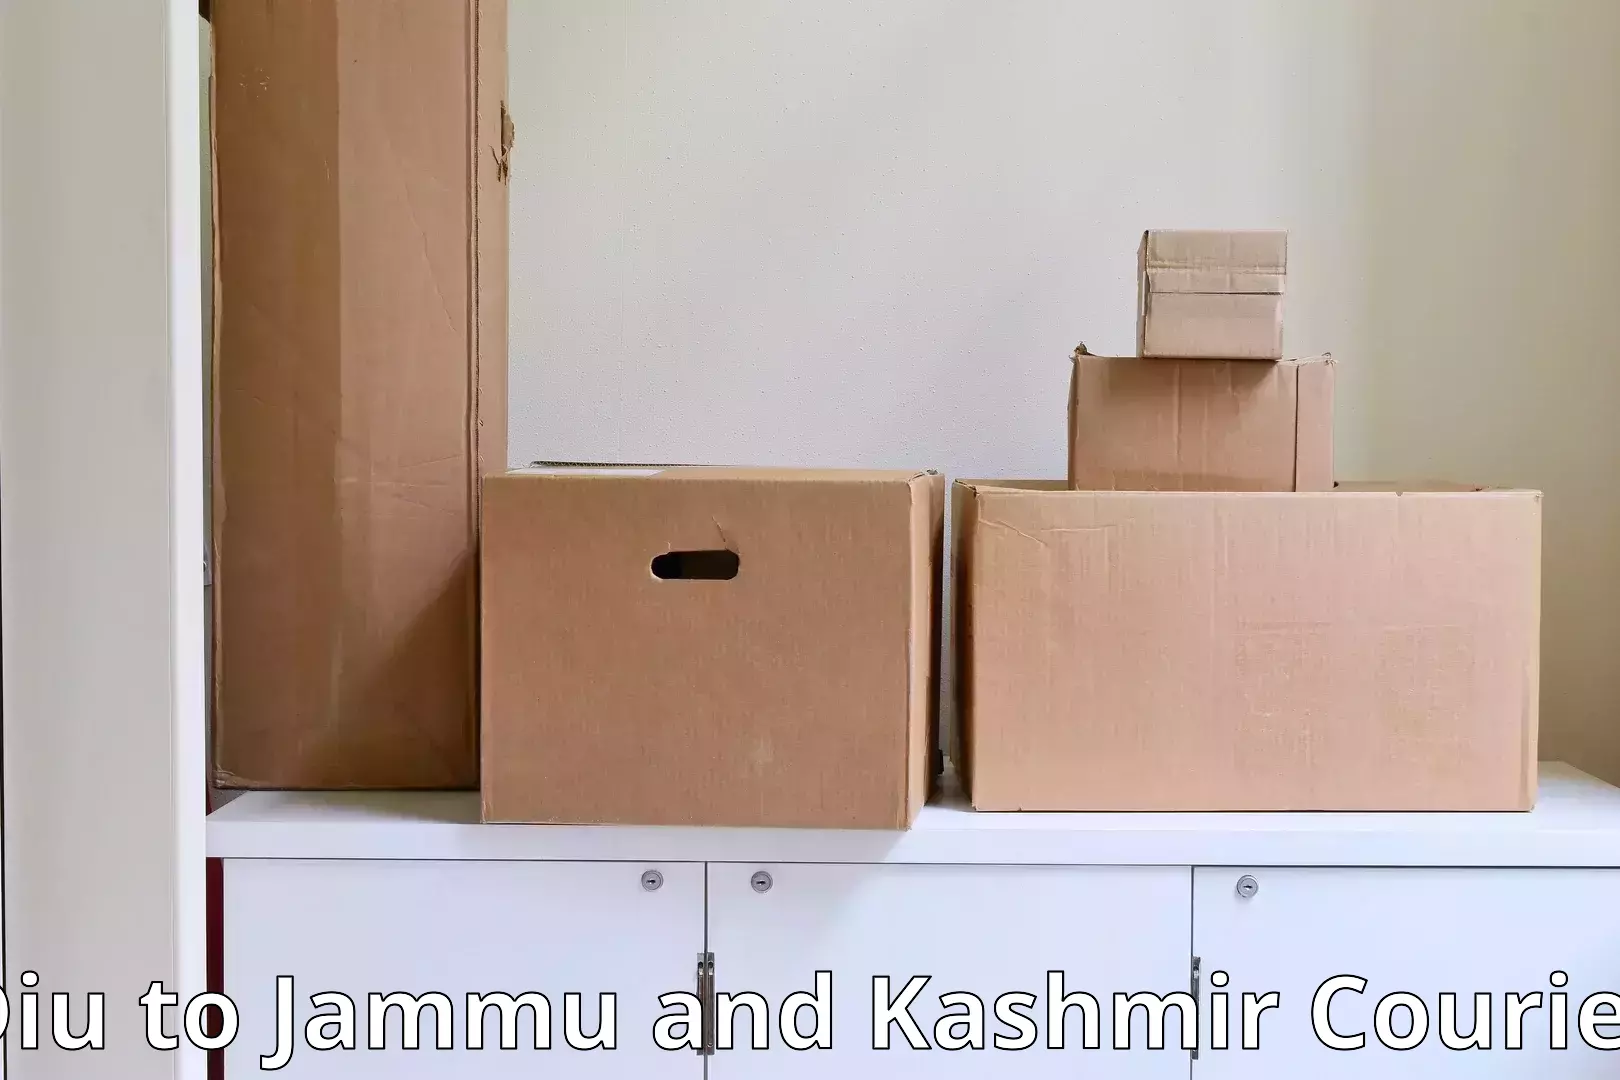 Furniture transport service Diu to Jammu